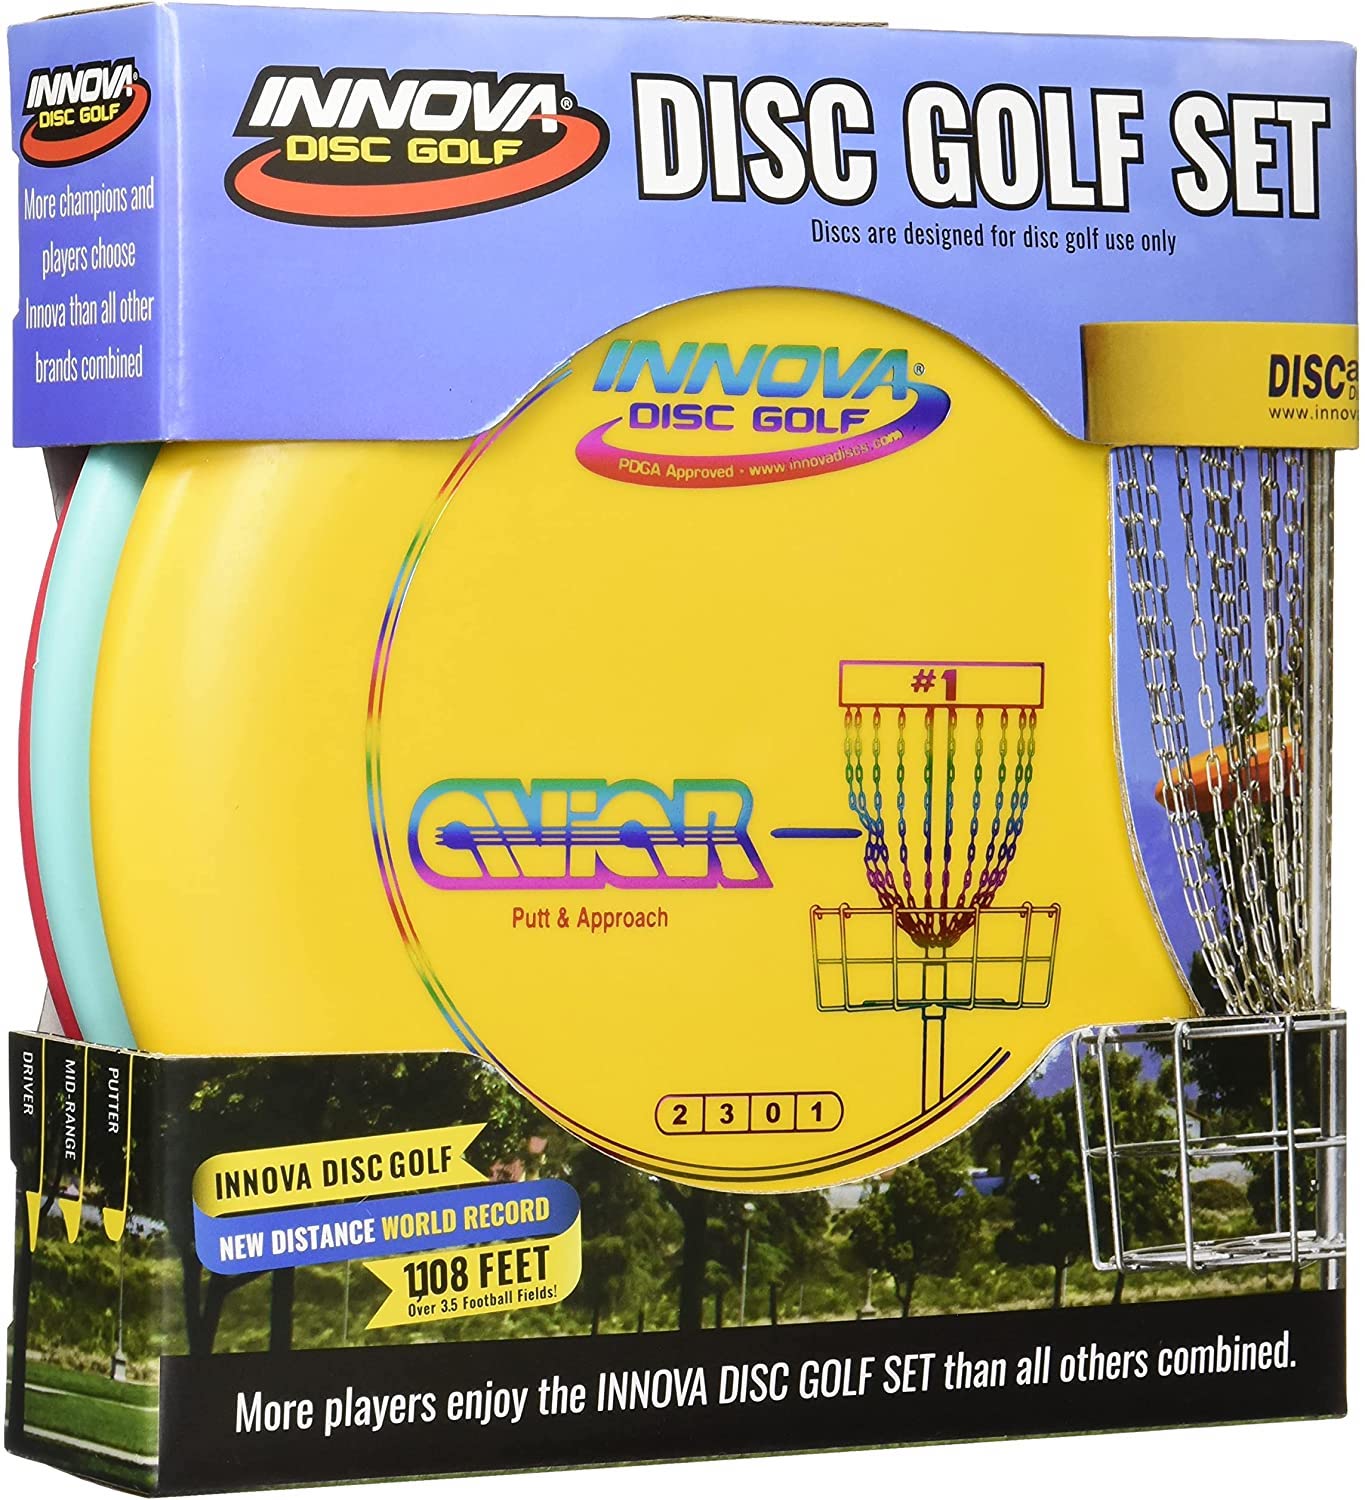 Disc golf set